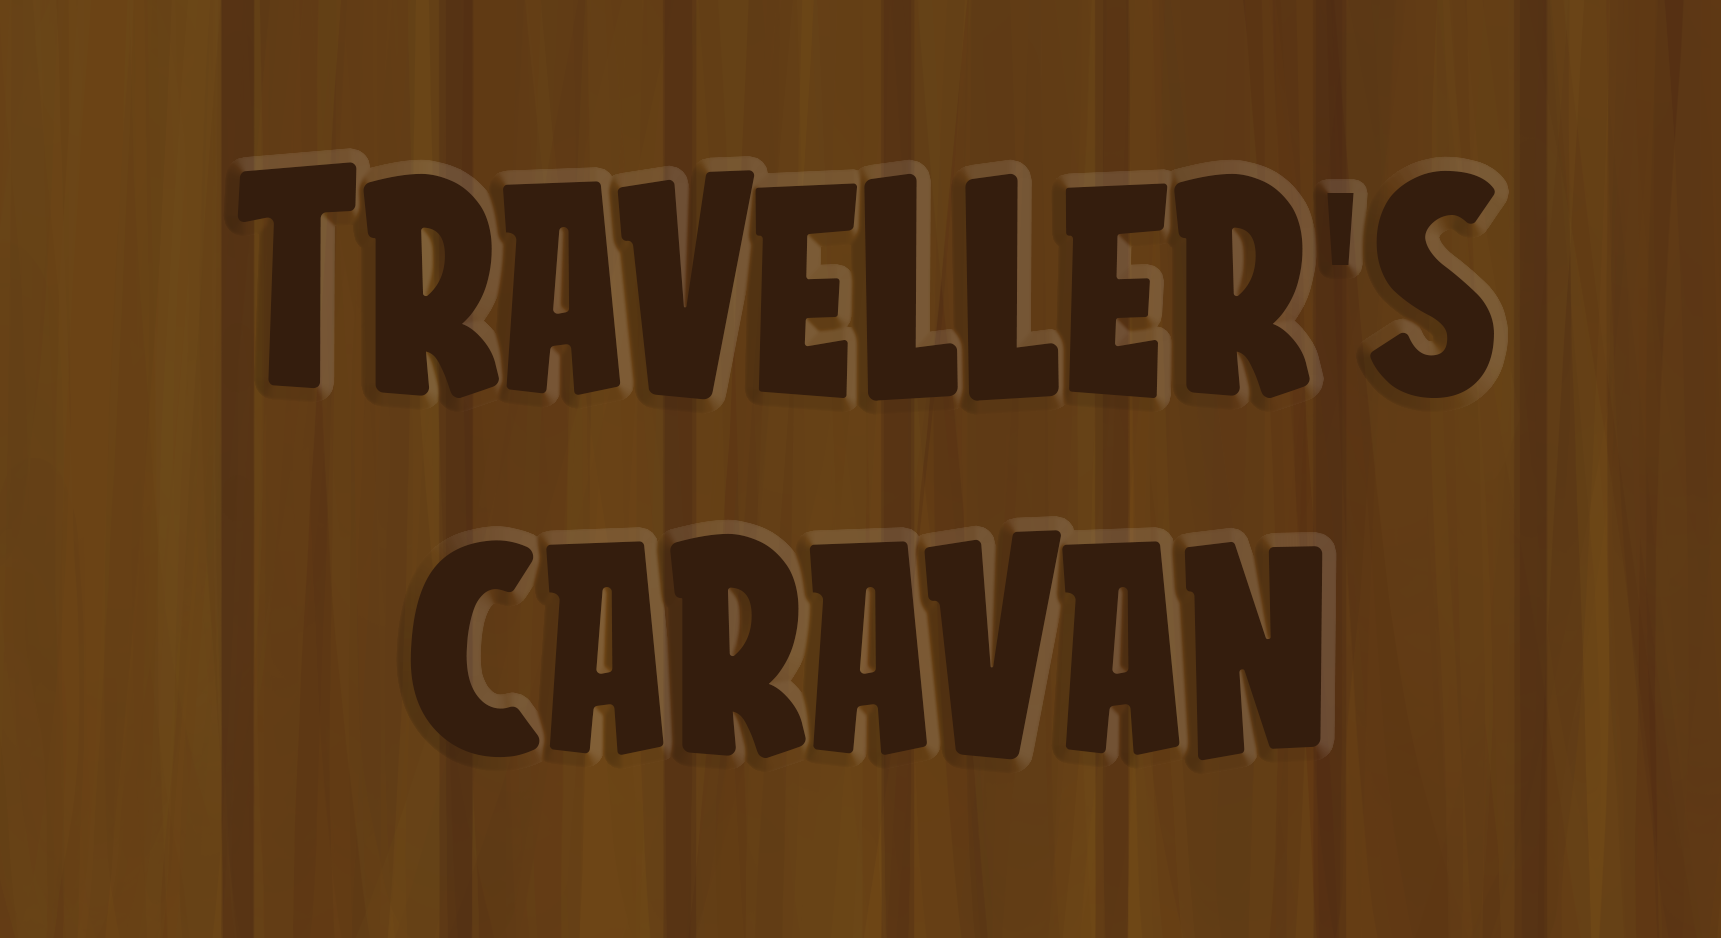 Traveller's Caravan